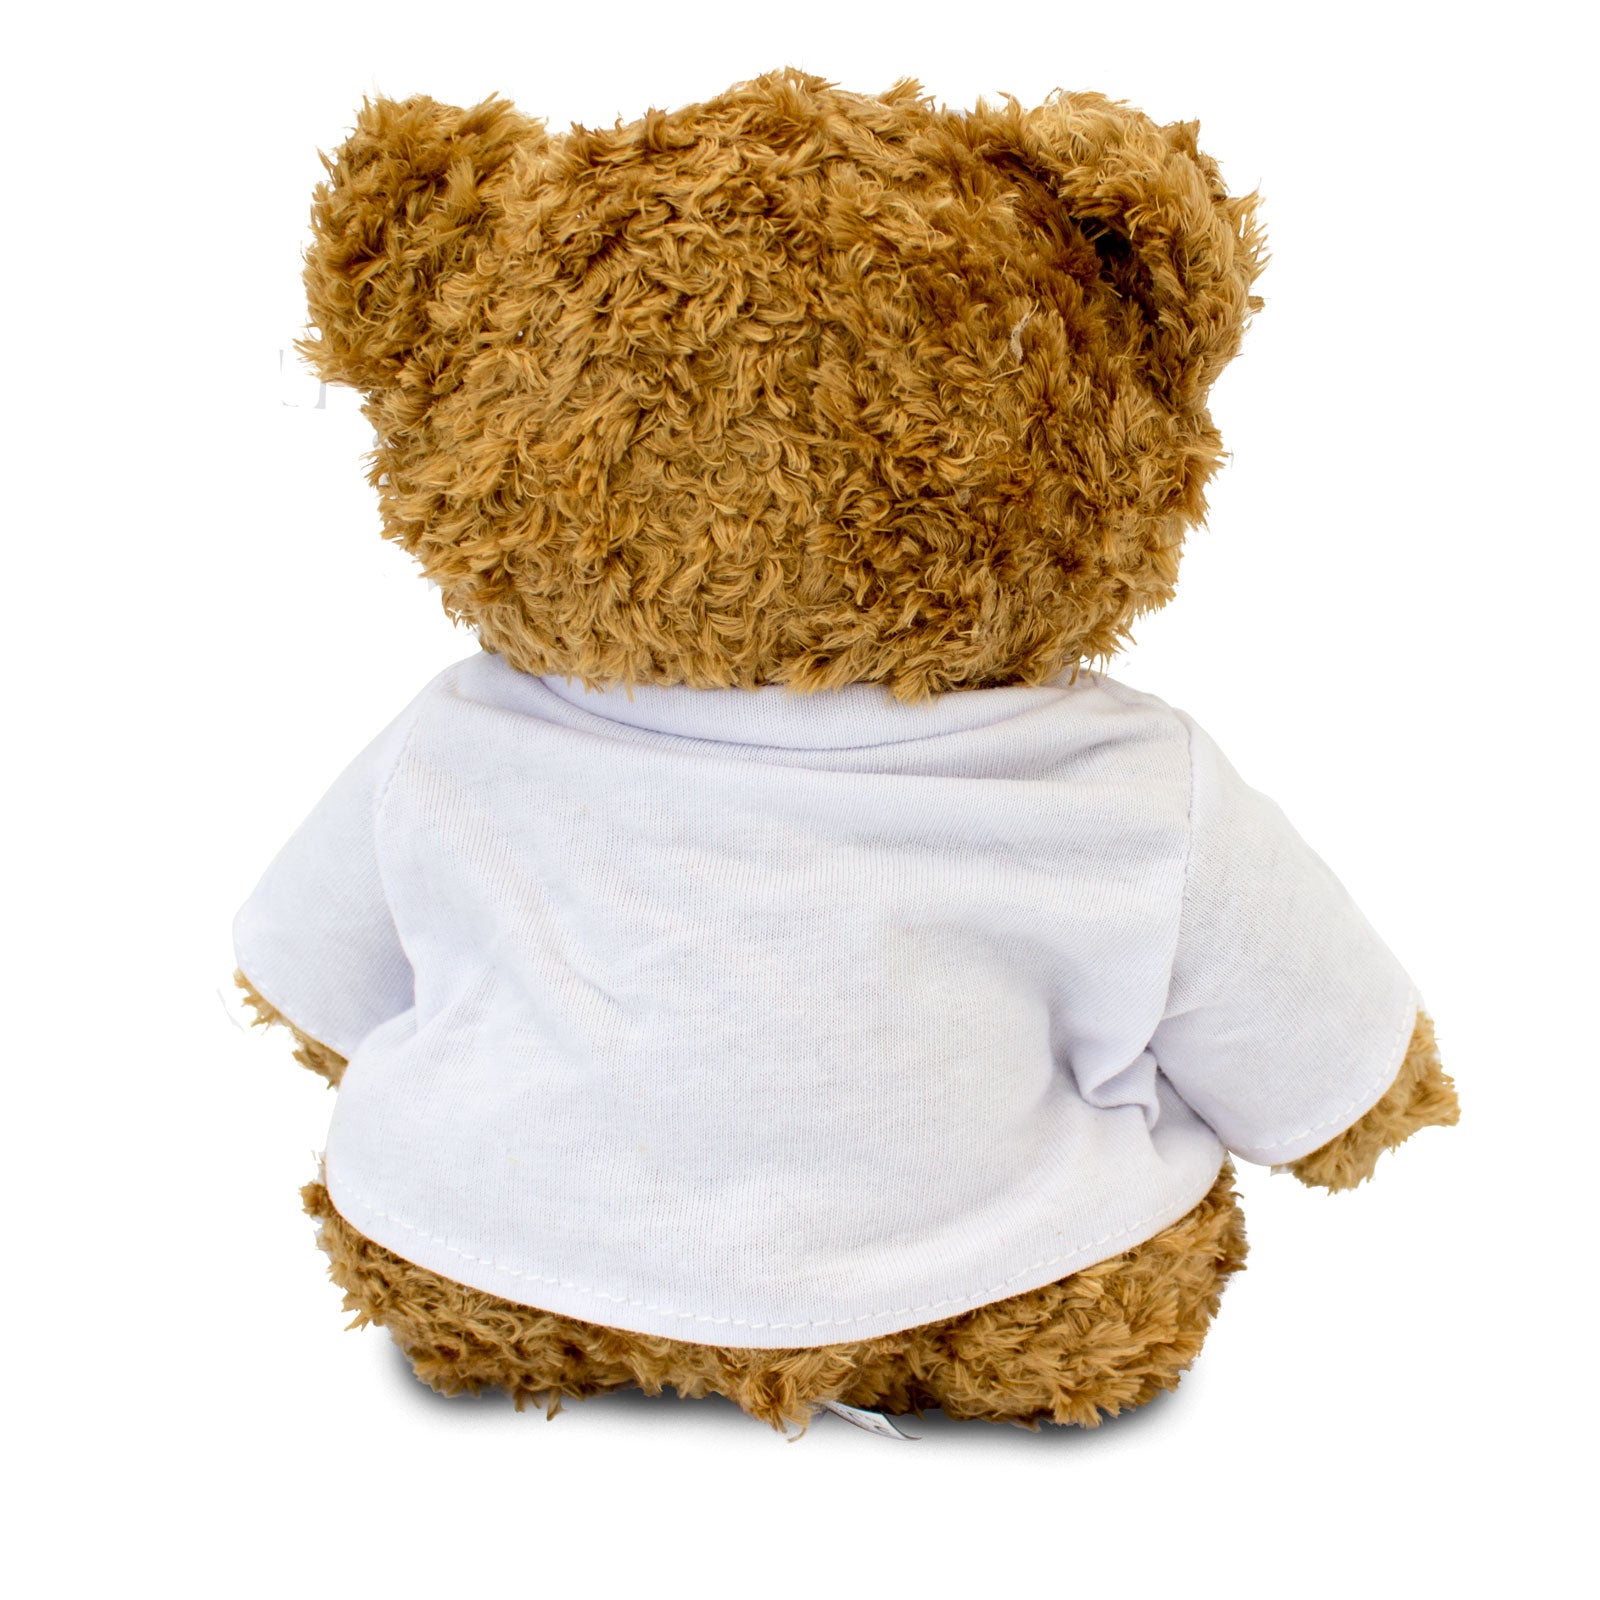 Get Well Soon Almira - Teddy Bear